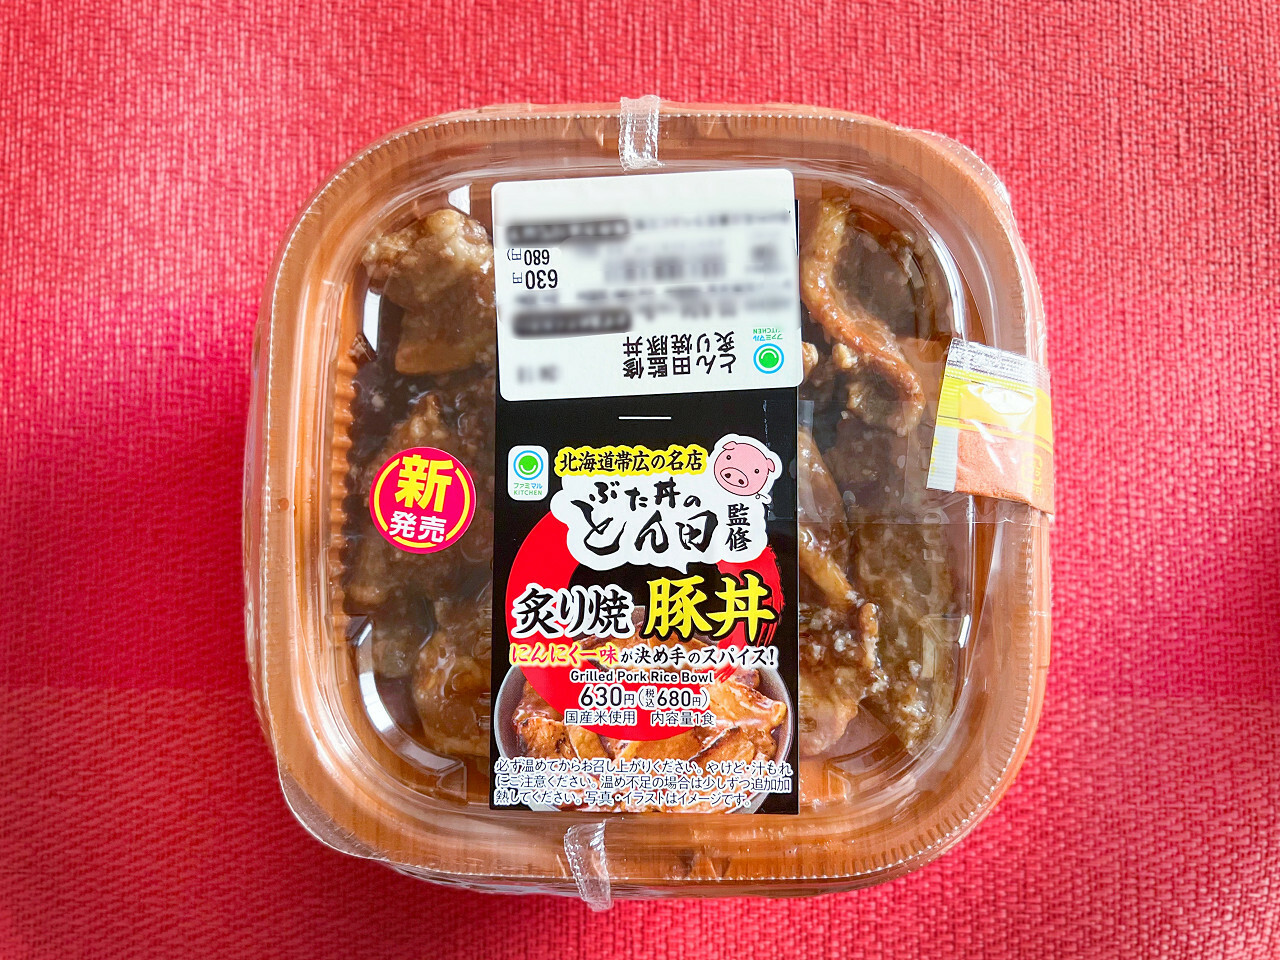 「ぶた丼のとん田監修 炙り焼豚丼」680円